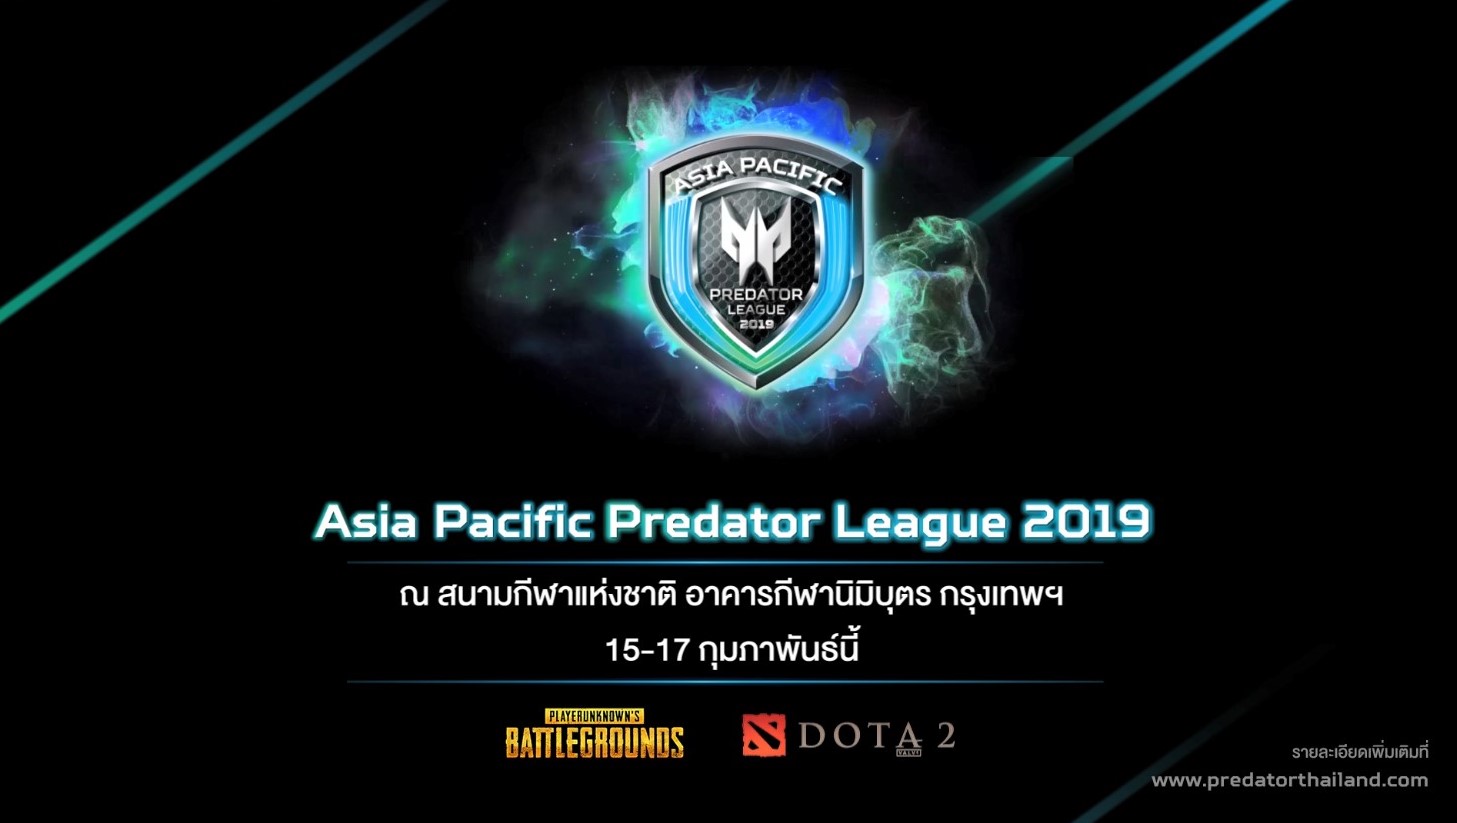 acer 1 เอเซอร์ชวนเหล่าเกมเมอร์เตรียมพบกับความยิ่งใหญ่ ในการแข่งขันกีฬาอีสปอร์ตระดับเอเชียแปซิฟิก Asia Pacific Predator League 2019